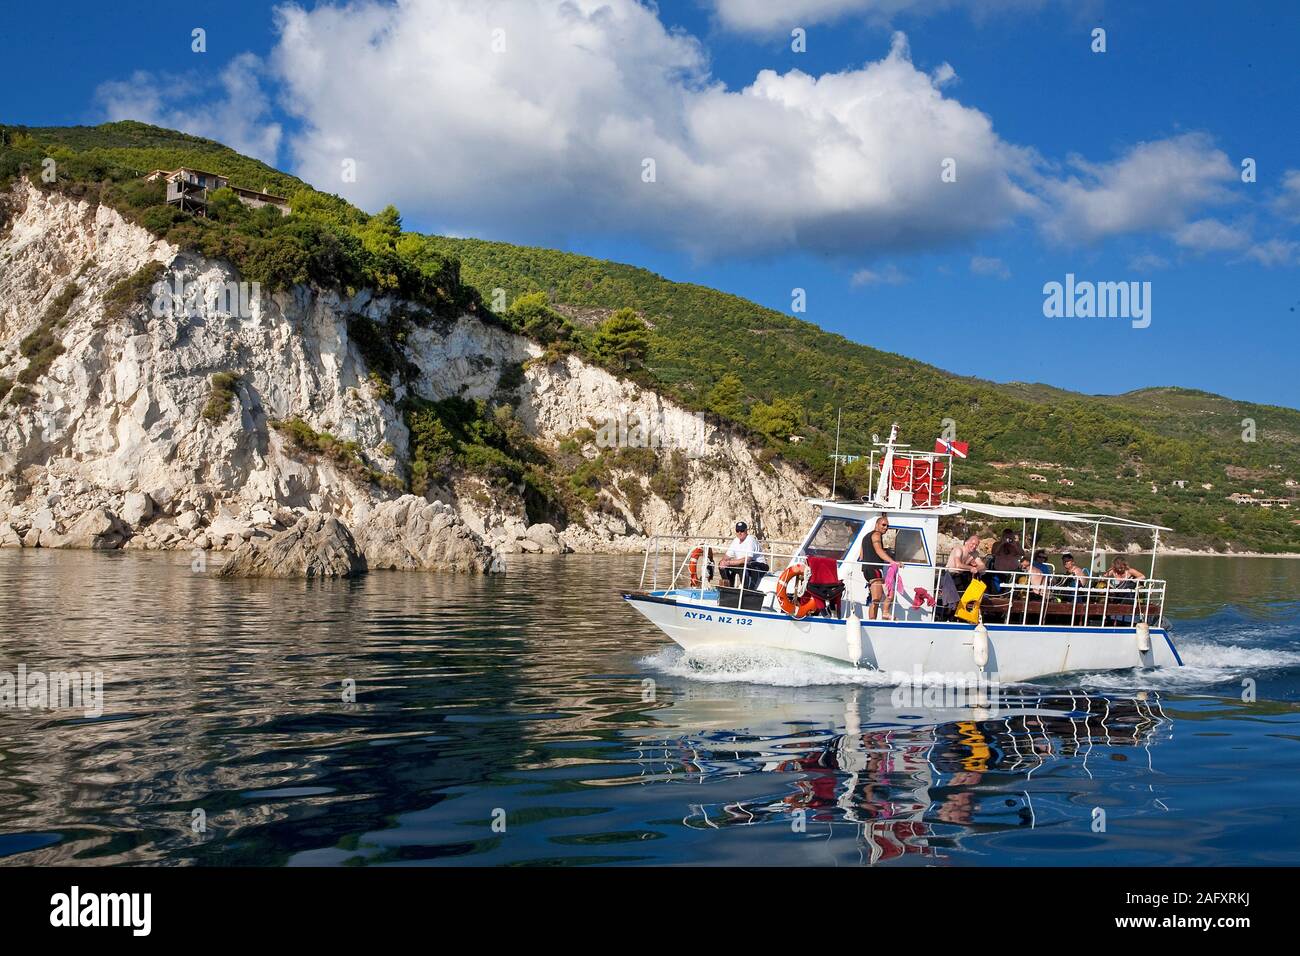 Tauchboot vor der Küste von Zakynthos, Griechenland | Dive boat at the rocky coast of Zakynthos island, Greece Stock Photo